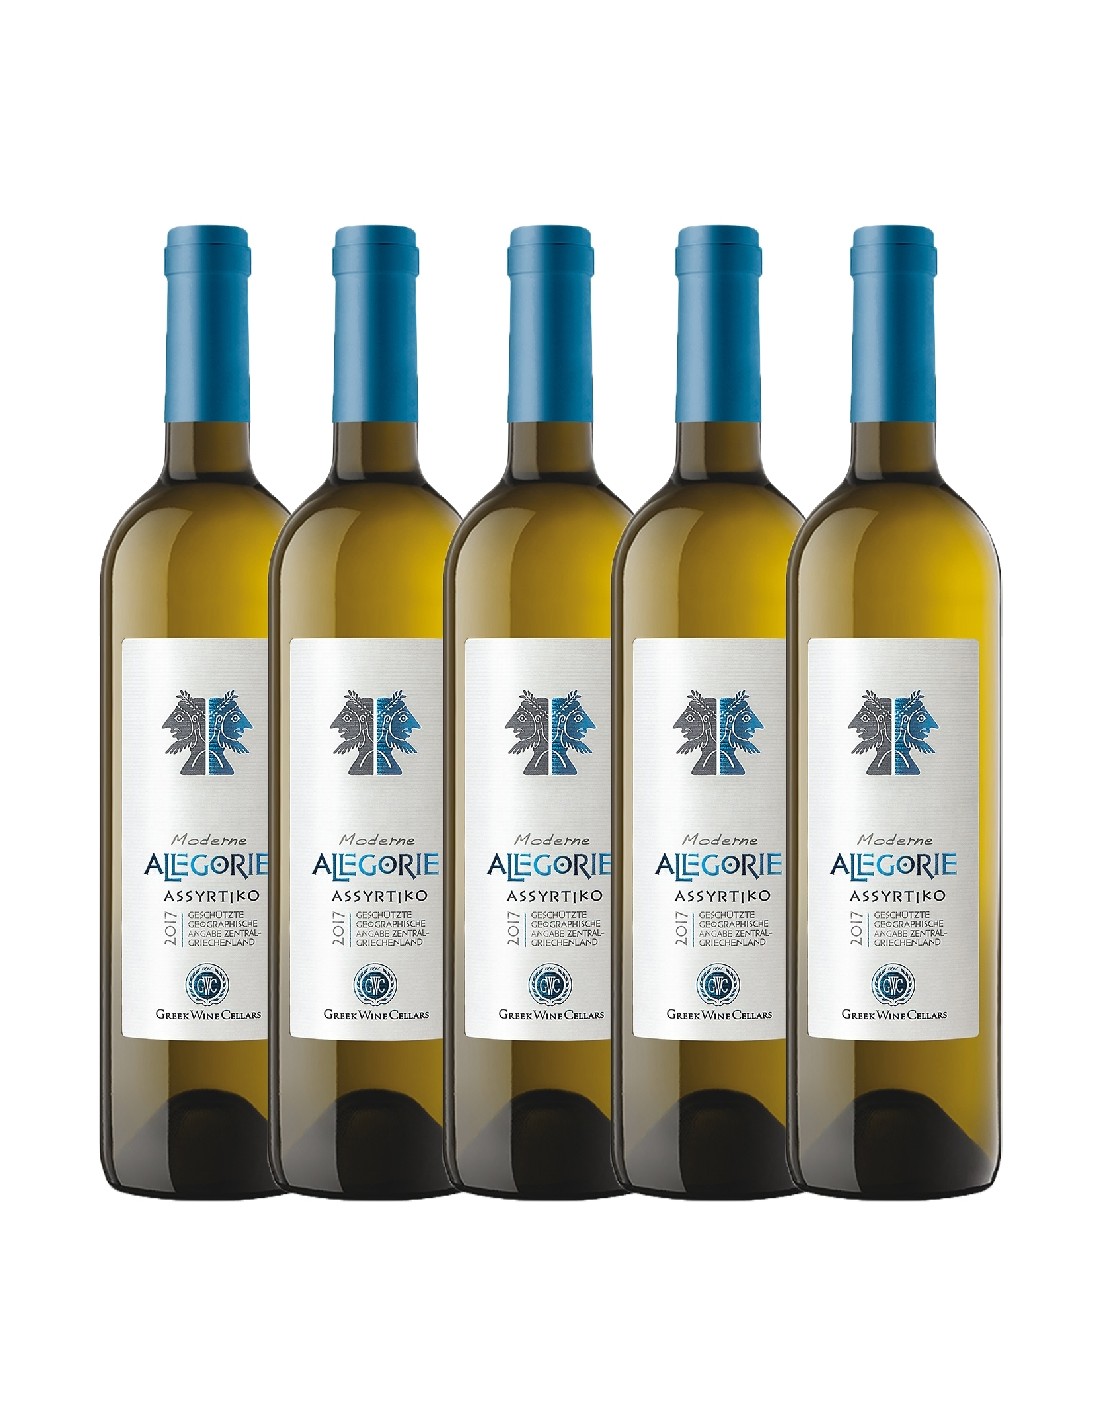 Pachet 5 sticle Vin alb, Allegorie Assyrtiko White, 0.75L, Grecia